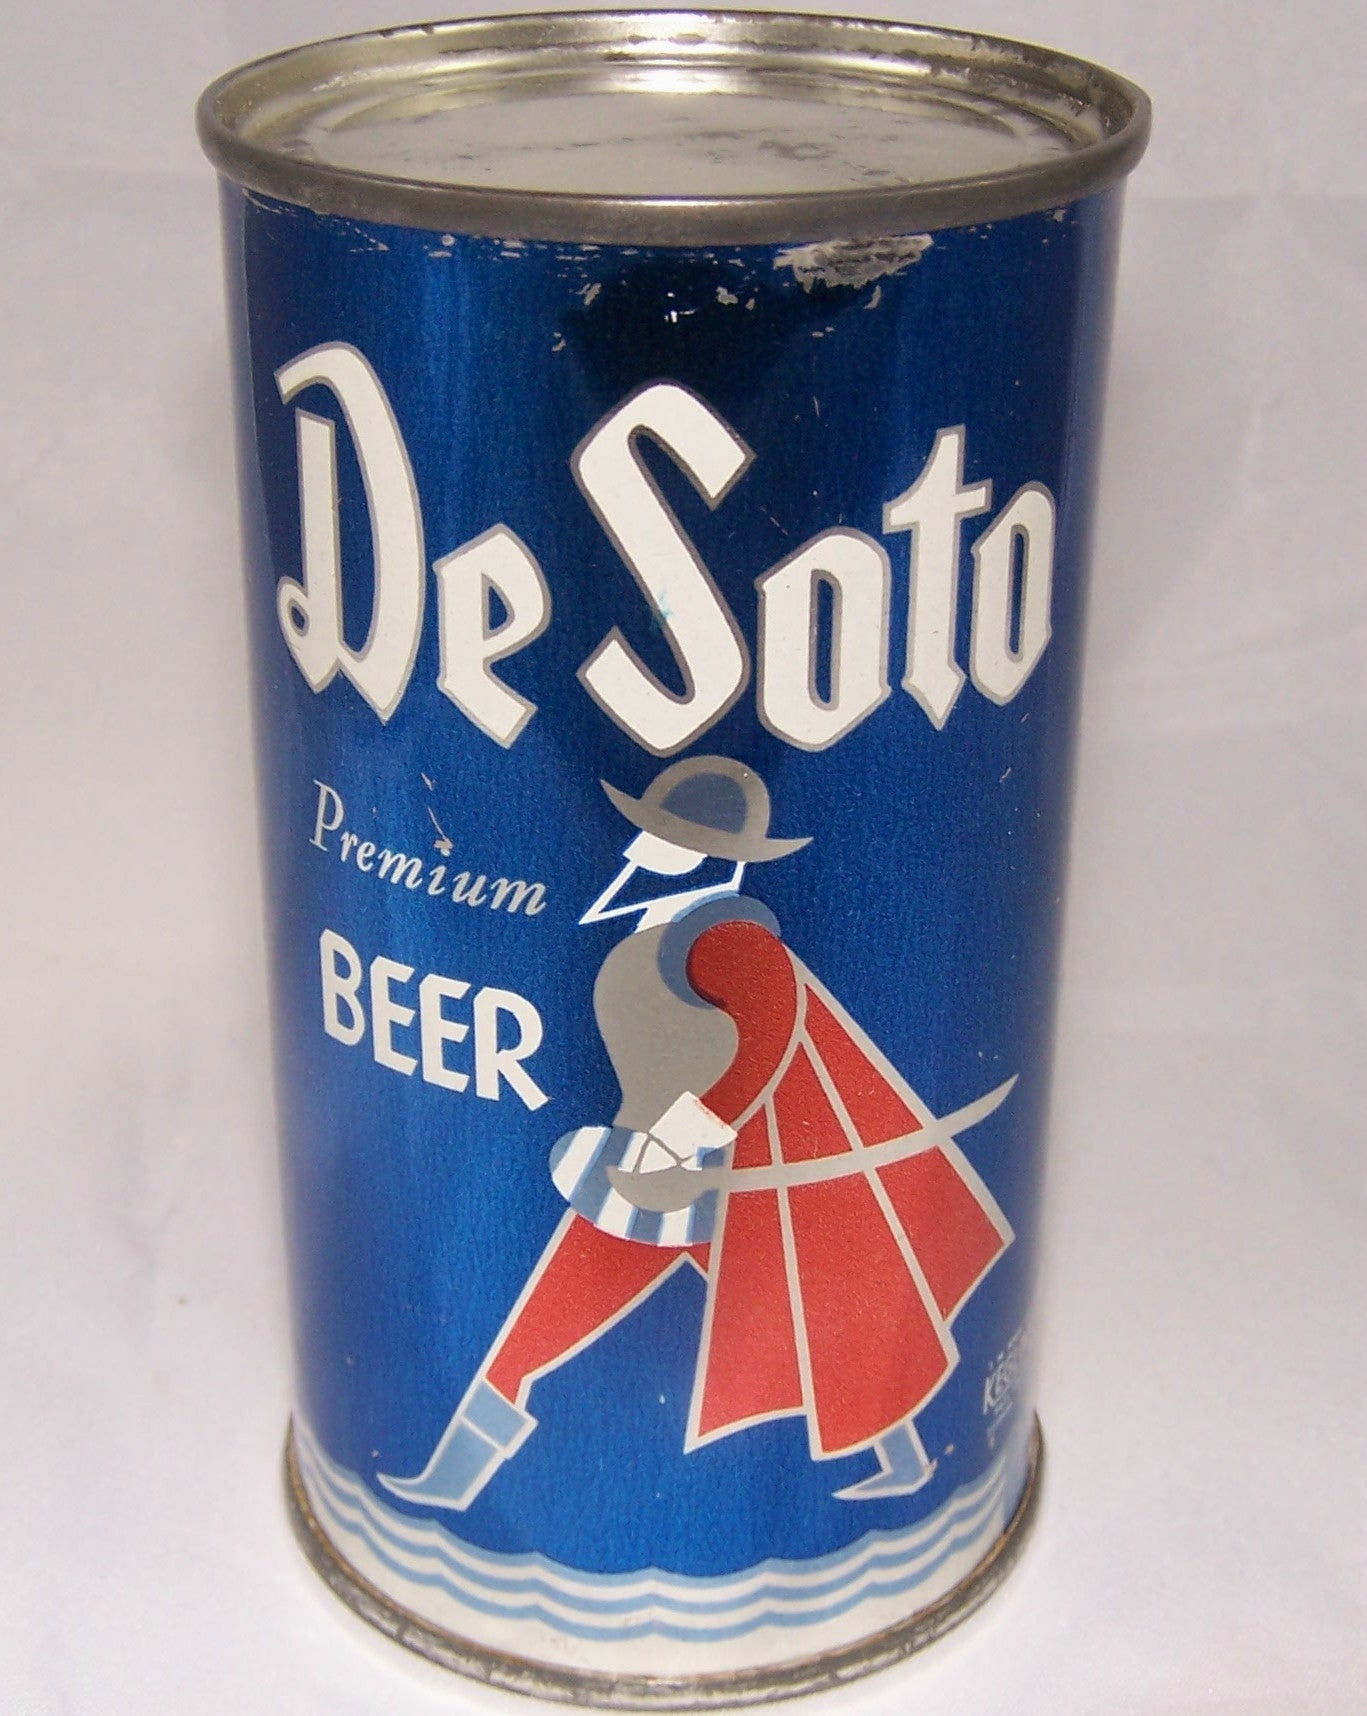 De Soto Premium Beer, USBC 53-28, Grade 1 to 1/1+ Sold on 5/14/15